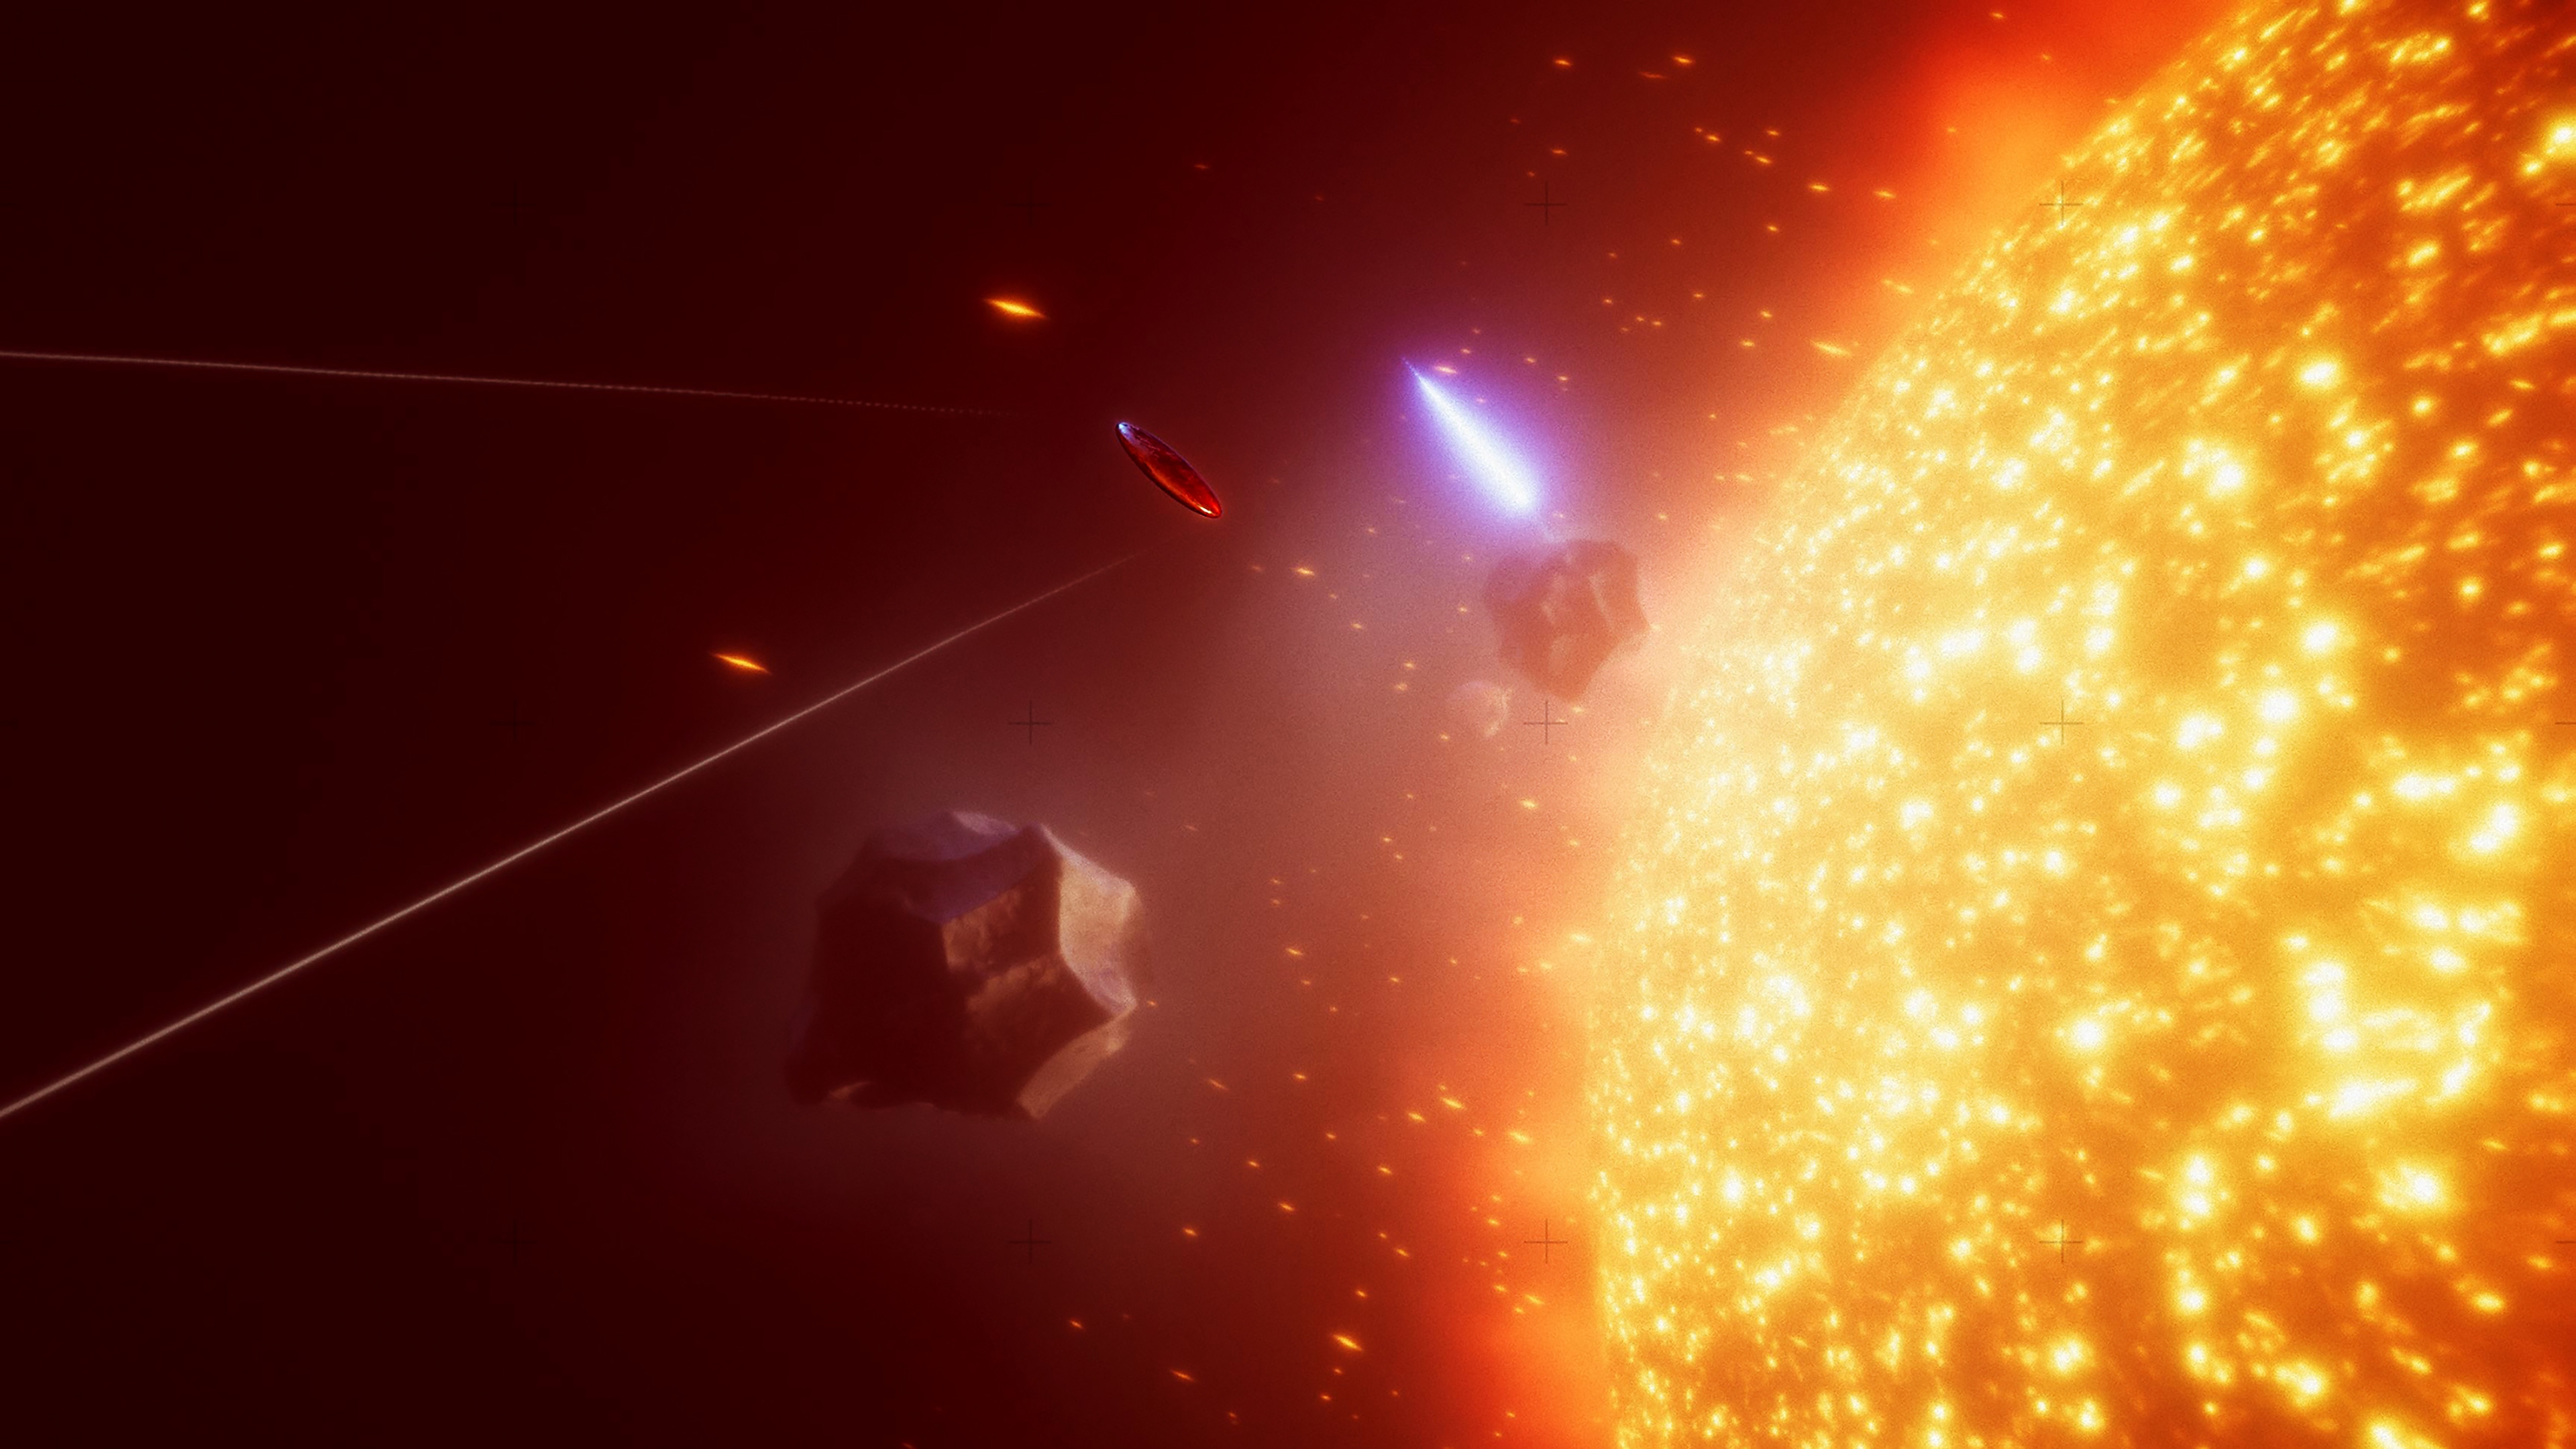 Capture d'écran d'Exo One - un objet volant près d'une entité ressemblant à une étoile